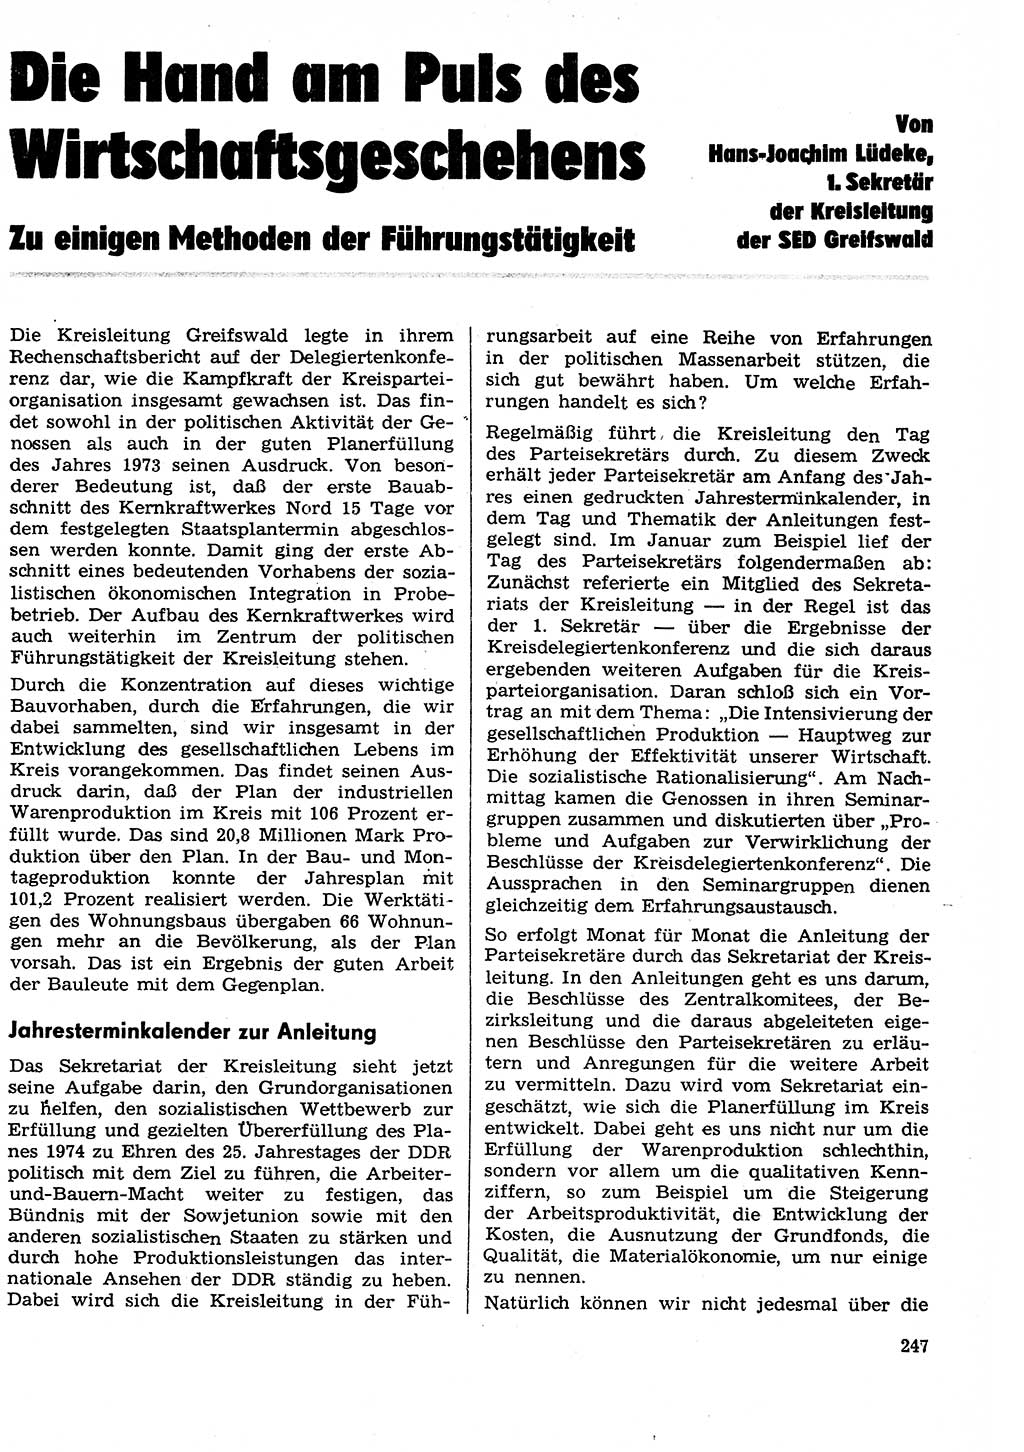 Neuer Weg (NW), Organ des Zentralkomitees (ZK) der SED (Sozialistische Einheitspartei Deutschlands) für Fragen des Parteilebens, 29. Jahrgang [Deutsche Demokratische Republik (DDR)] 1974, Seite 247 (NW ZK SED DDR 1974, S. 247)